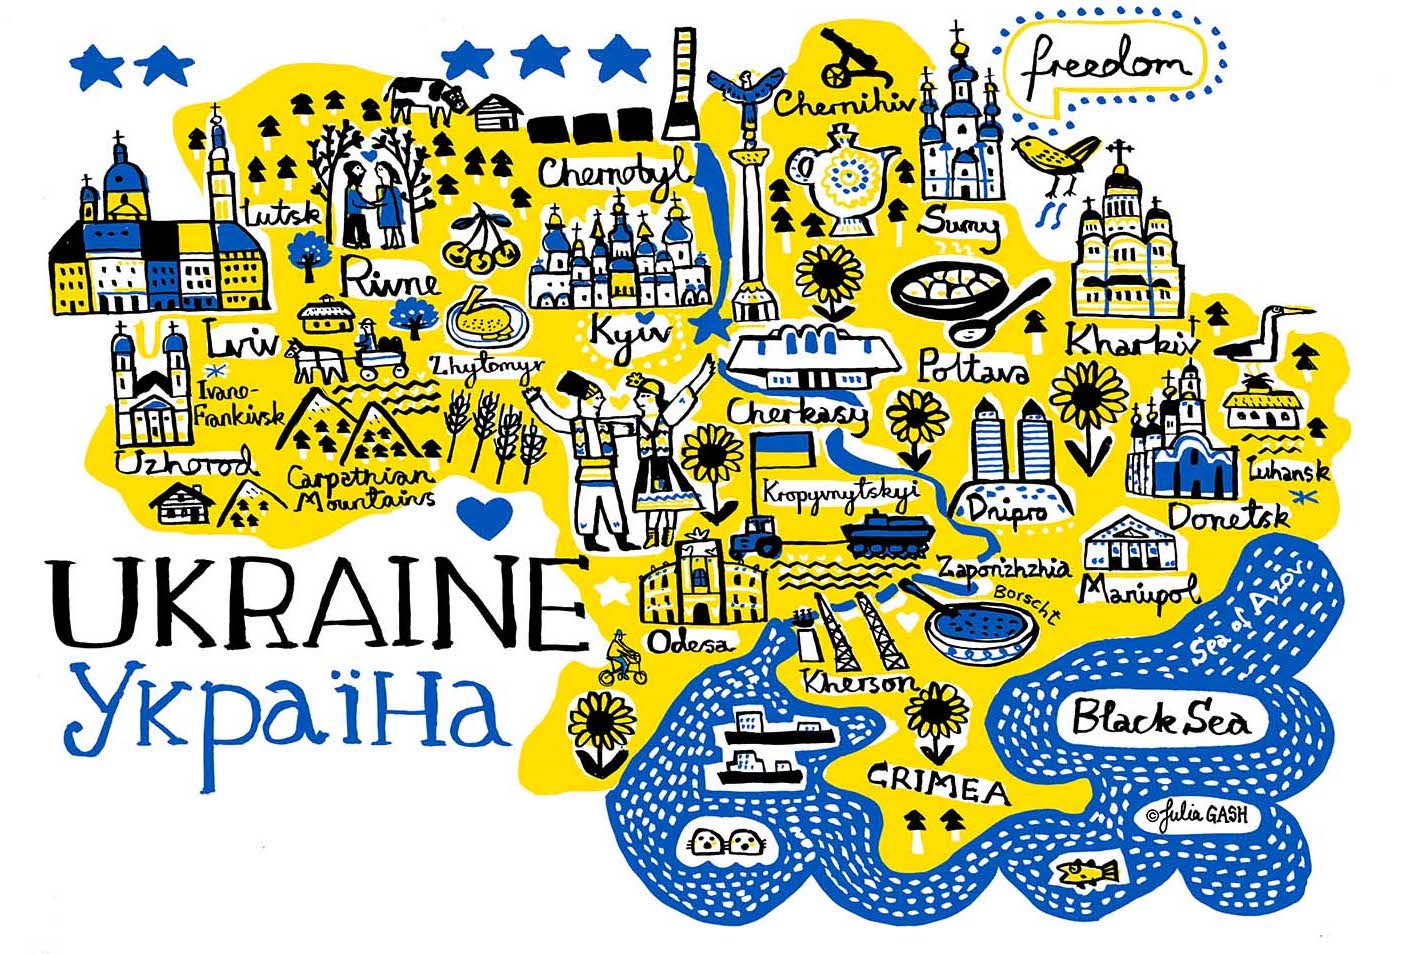 Viva Ukraine!